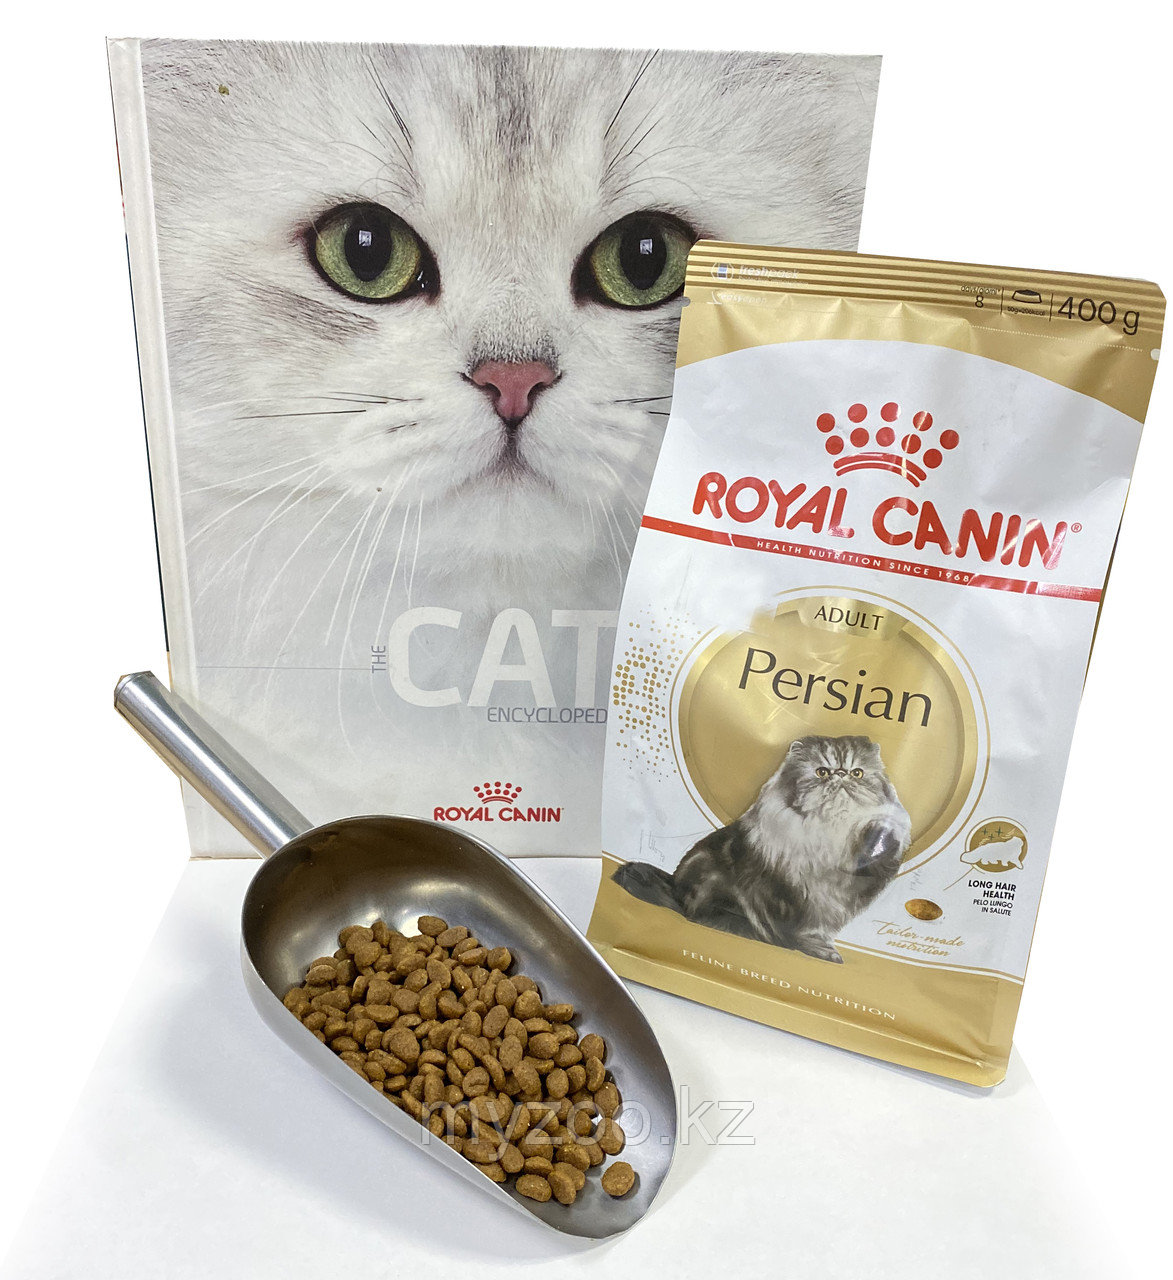 Royal Canin Persian, 1 кг на вес | Роял Канин Персы корм для персидской породы кошек|